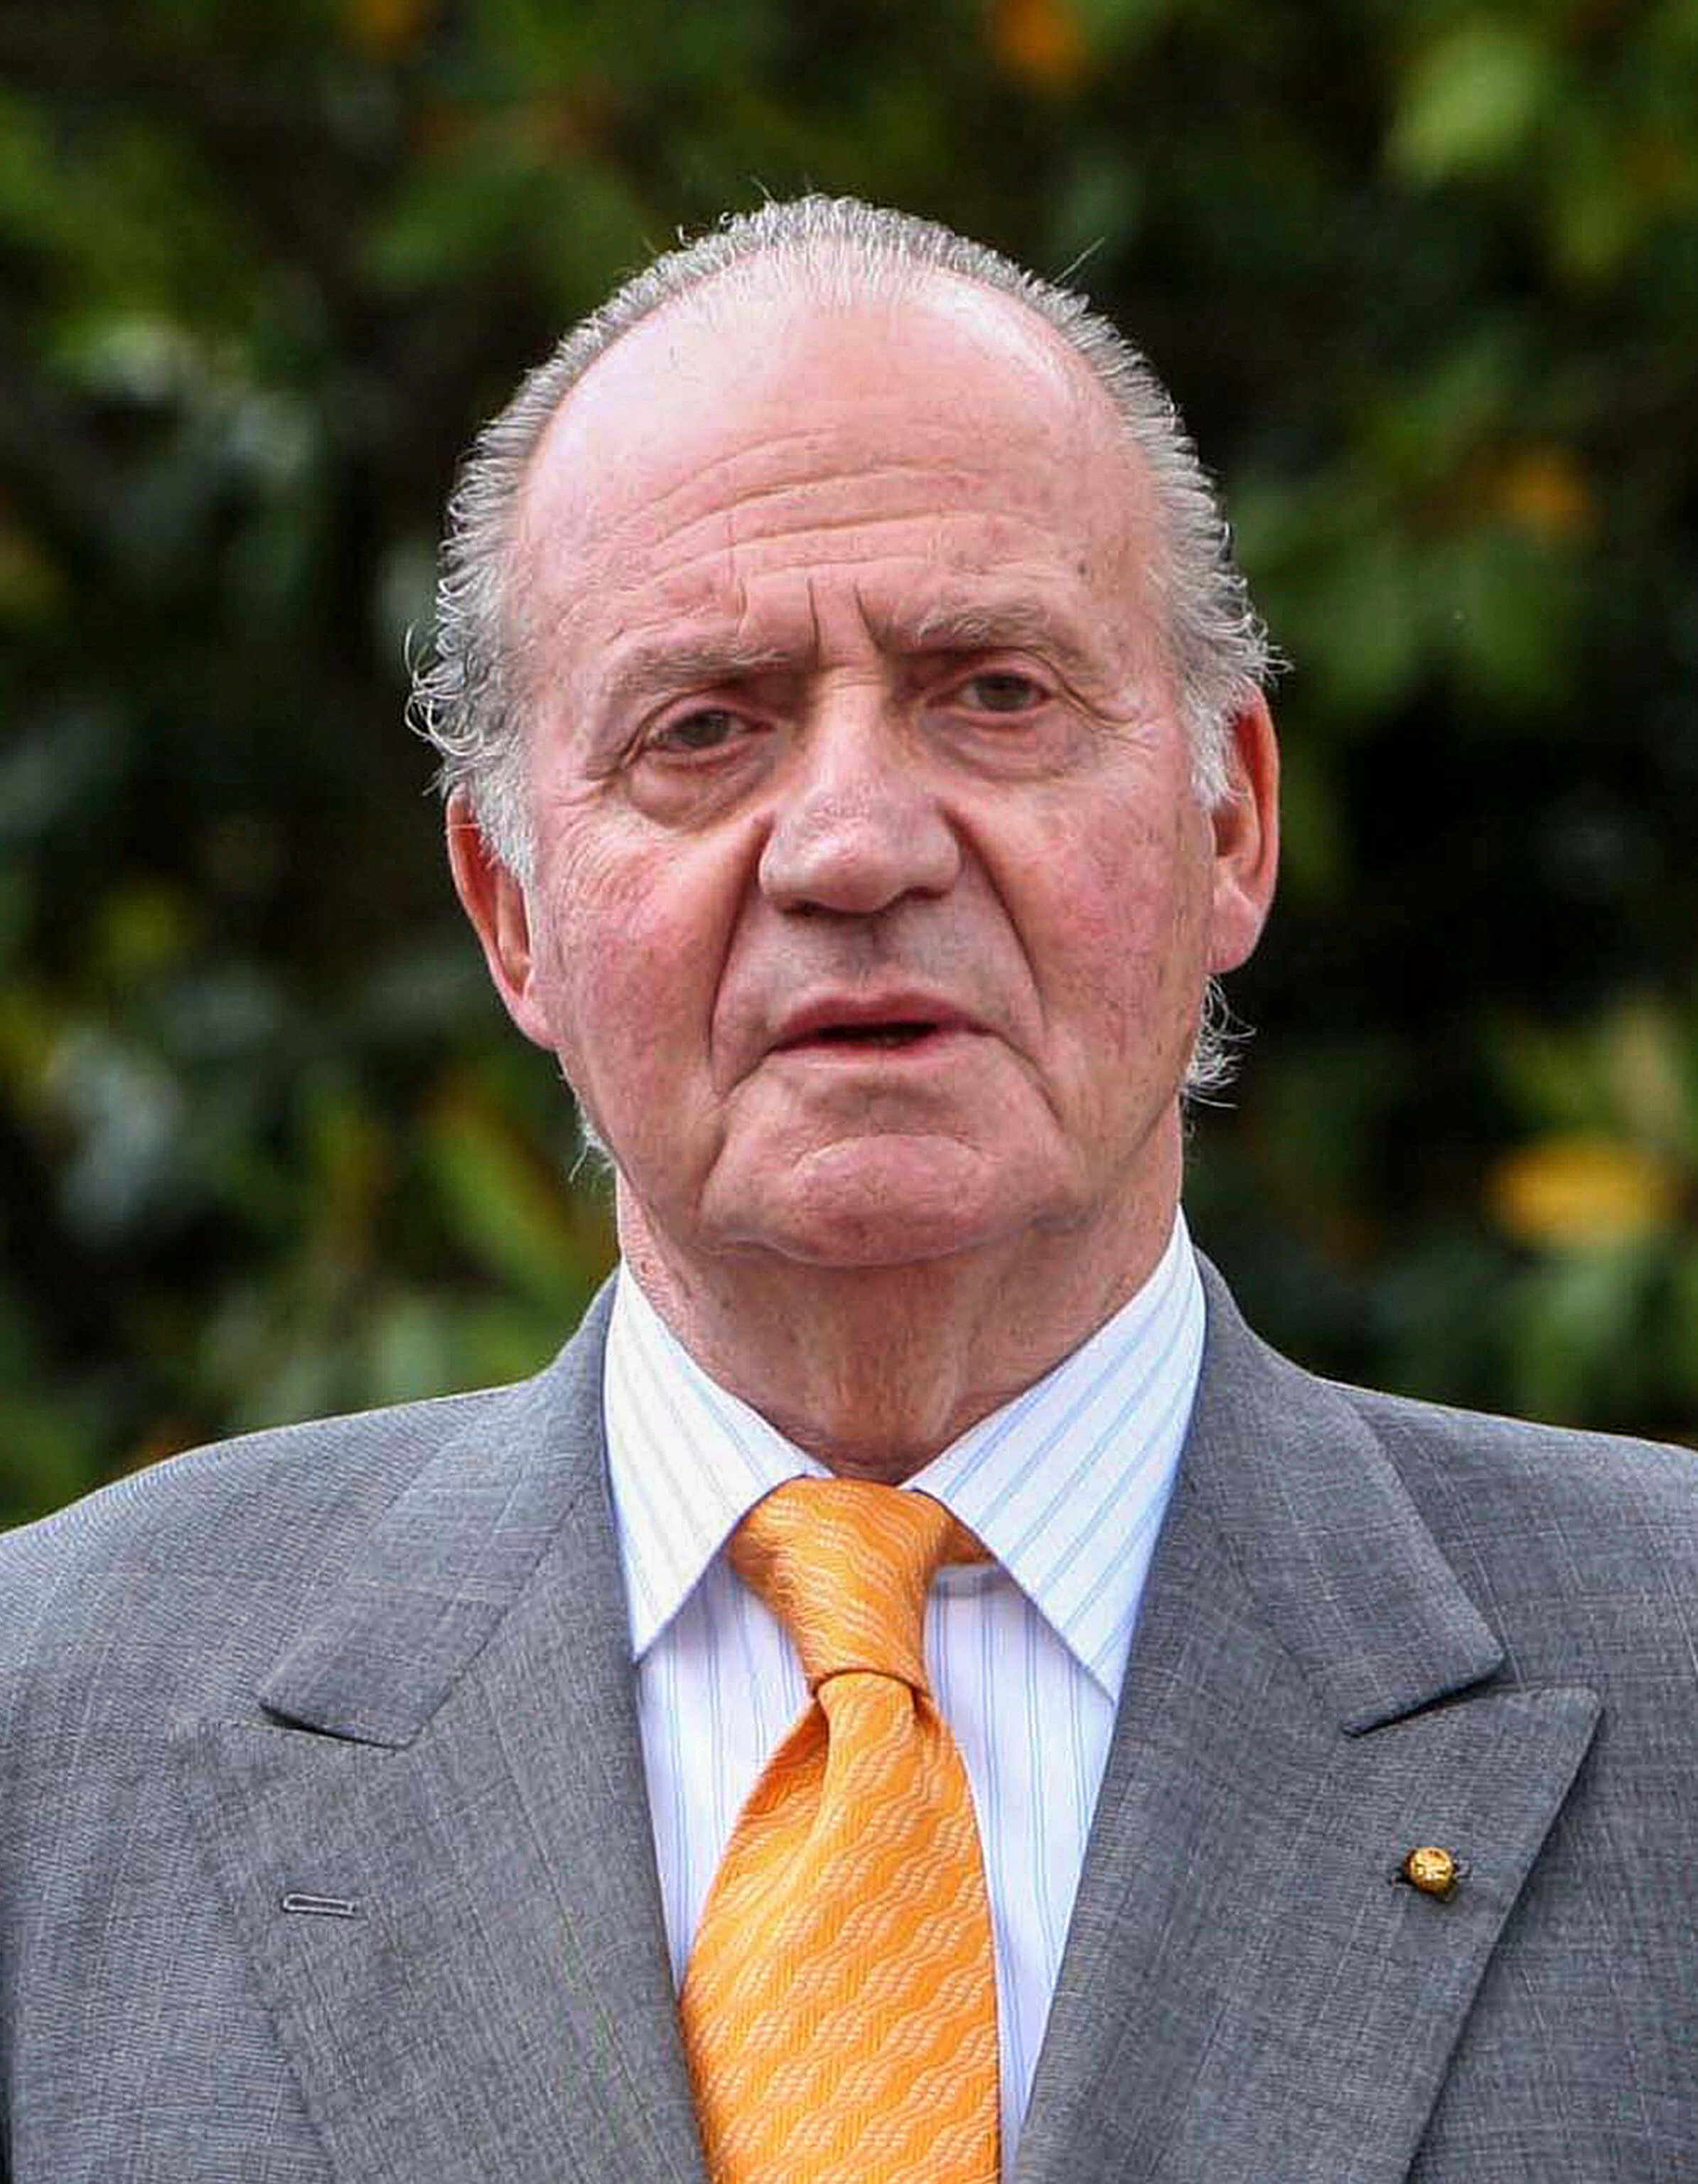 Juan Carlos von Spanien